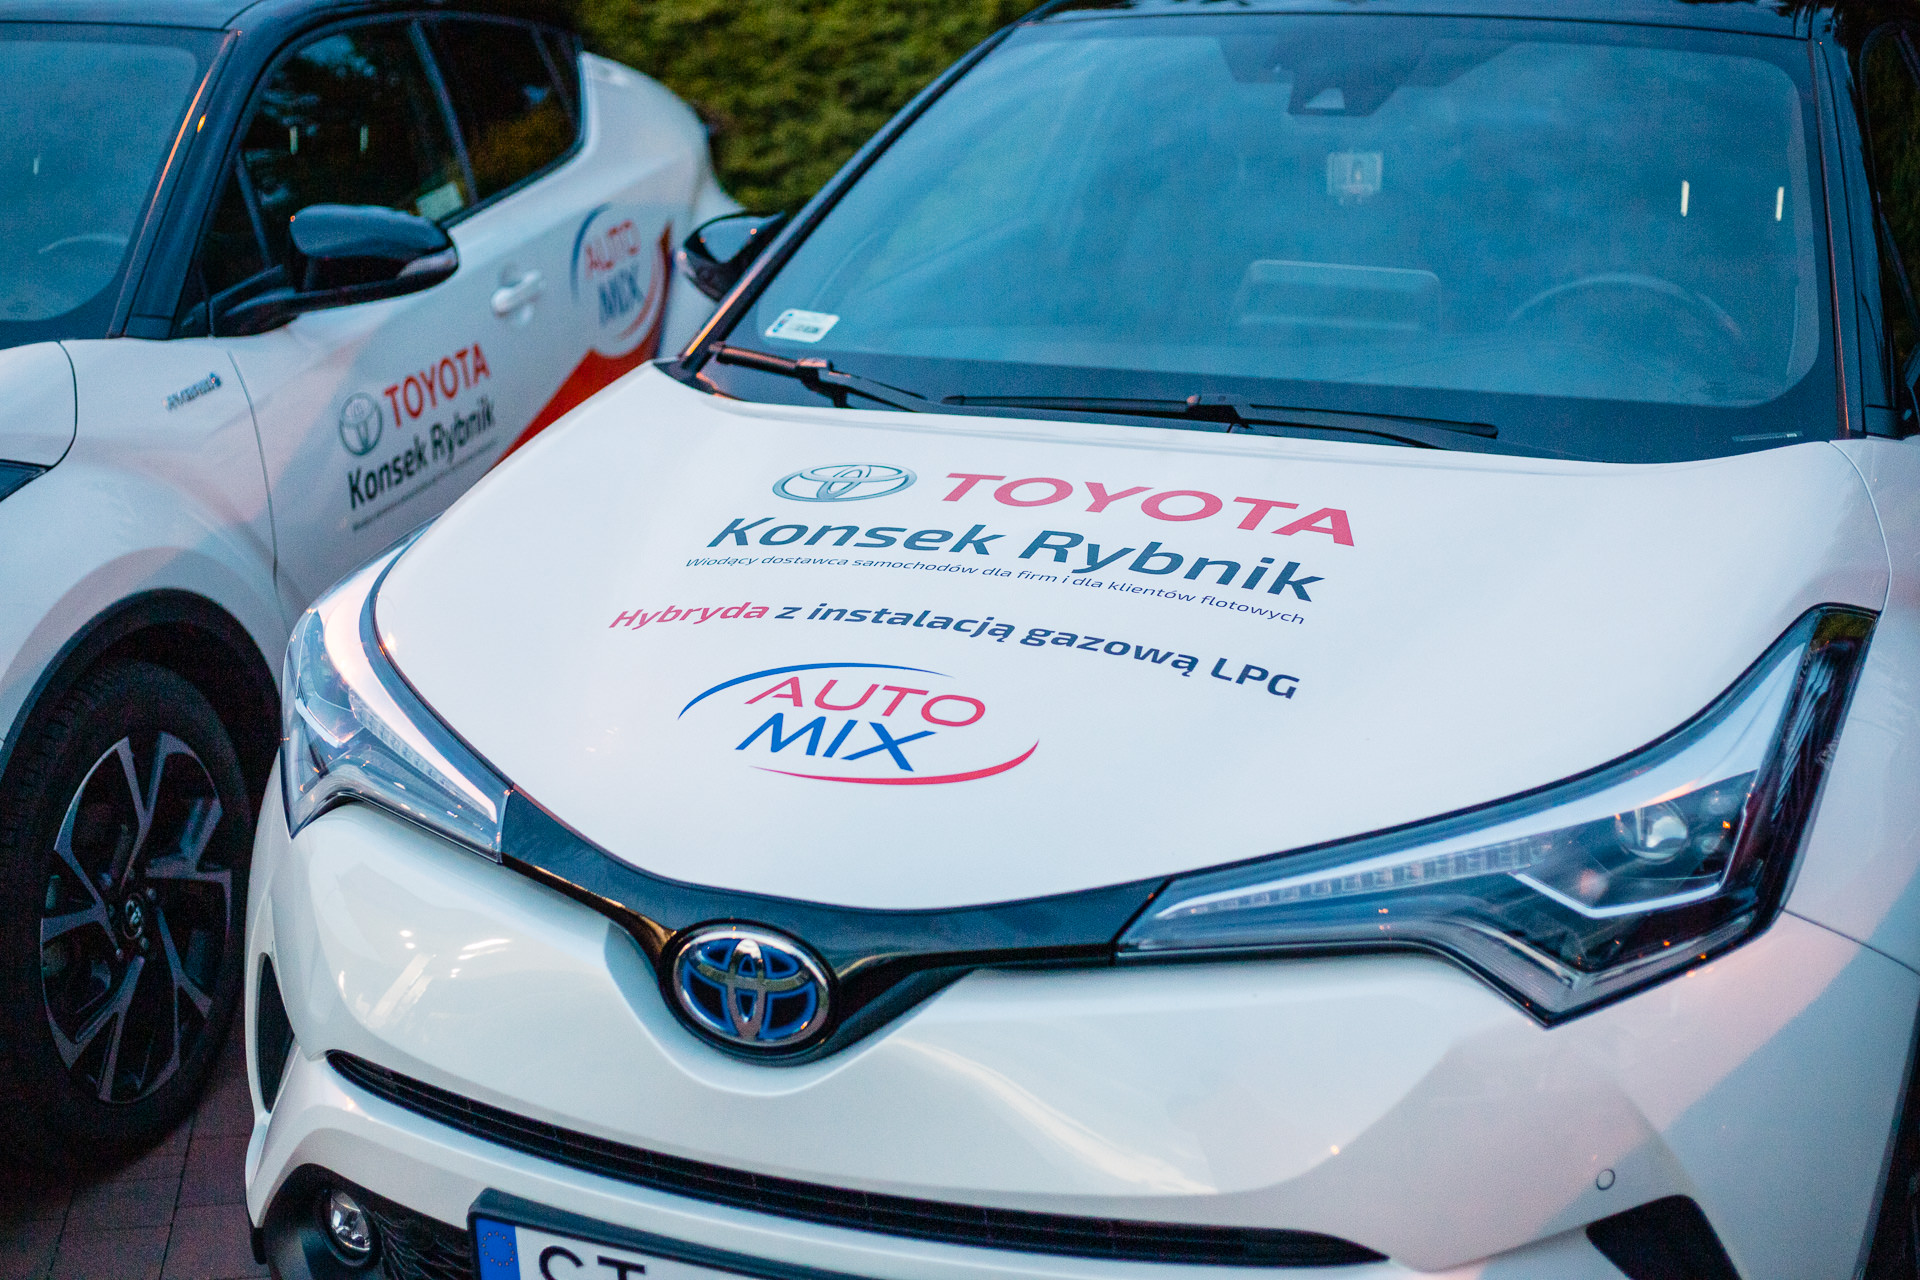 Toyota CHR instalacja LPG » Auto Mix Skrzyszów